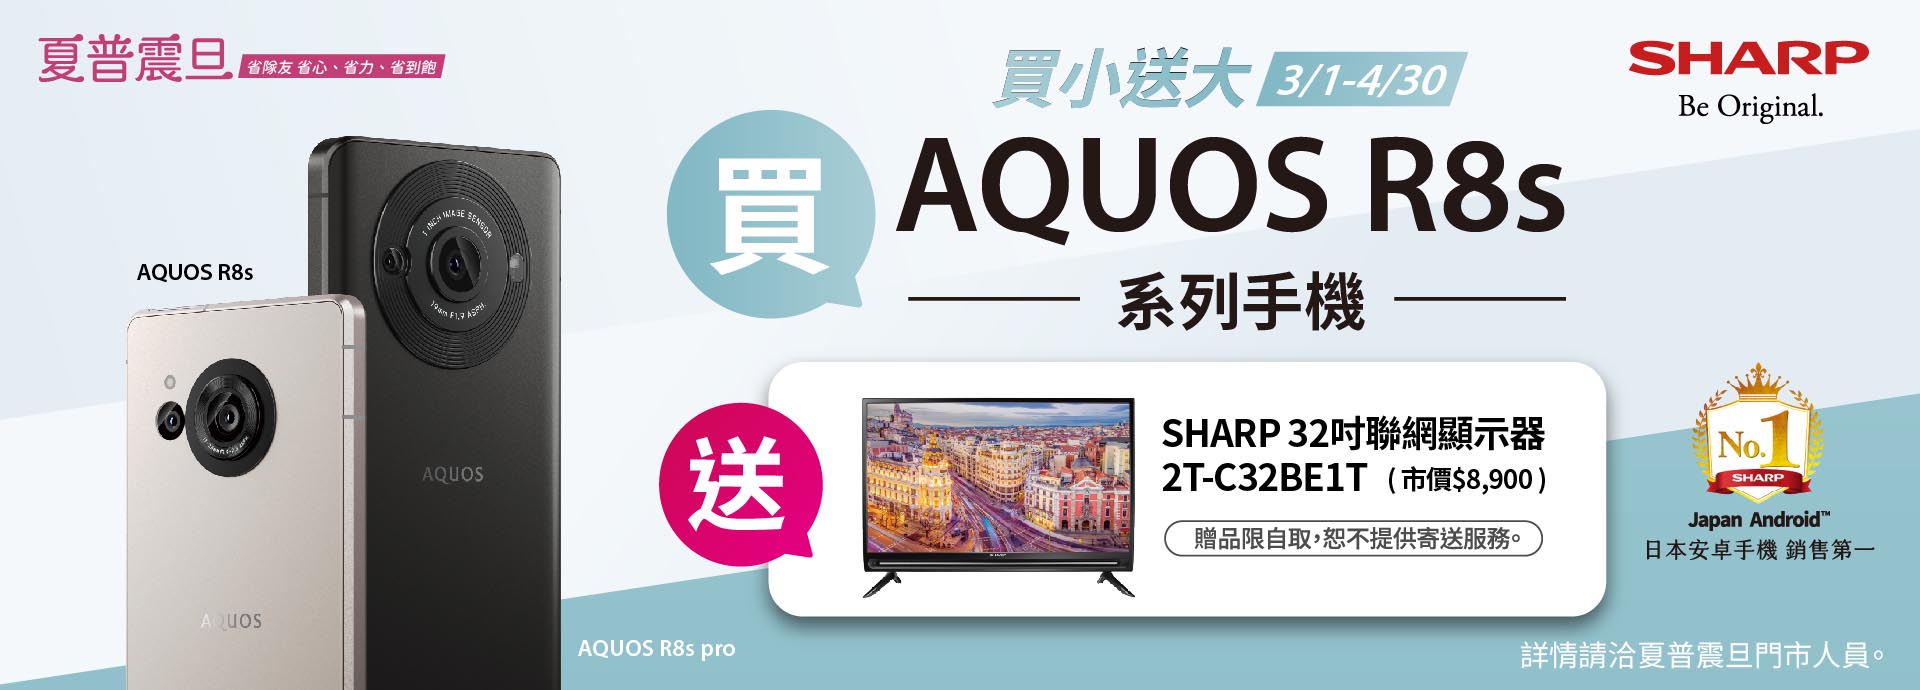 買小送大!! 買AQUOS R8s系列手機，送SHARP 32吋聯網顯示器！